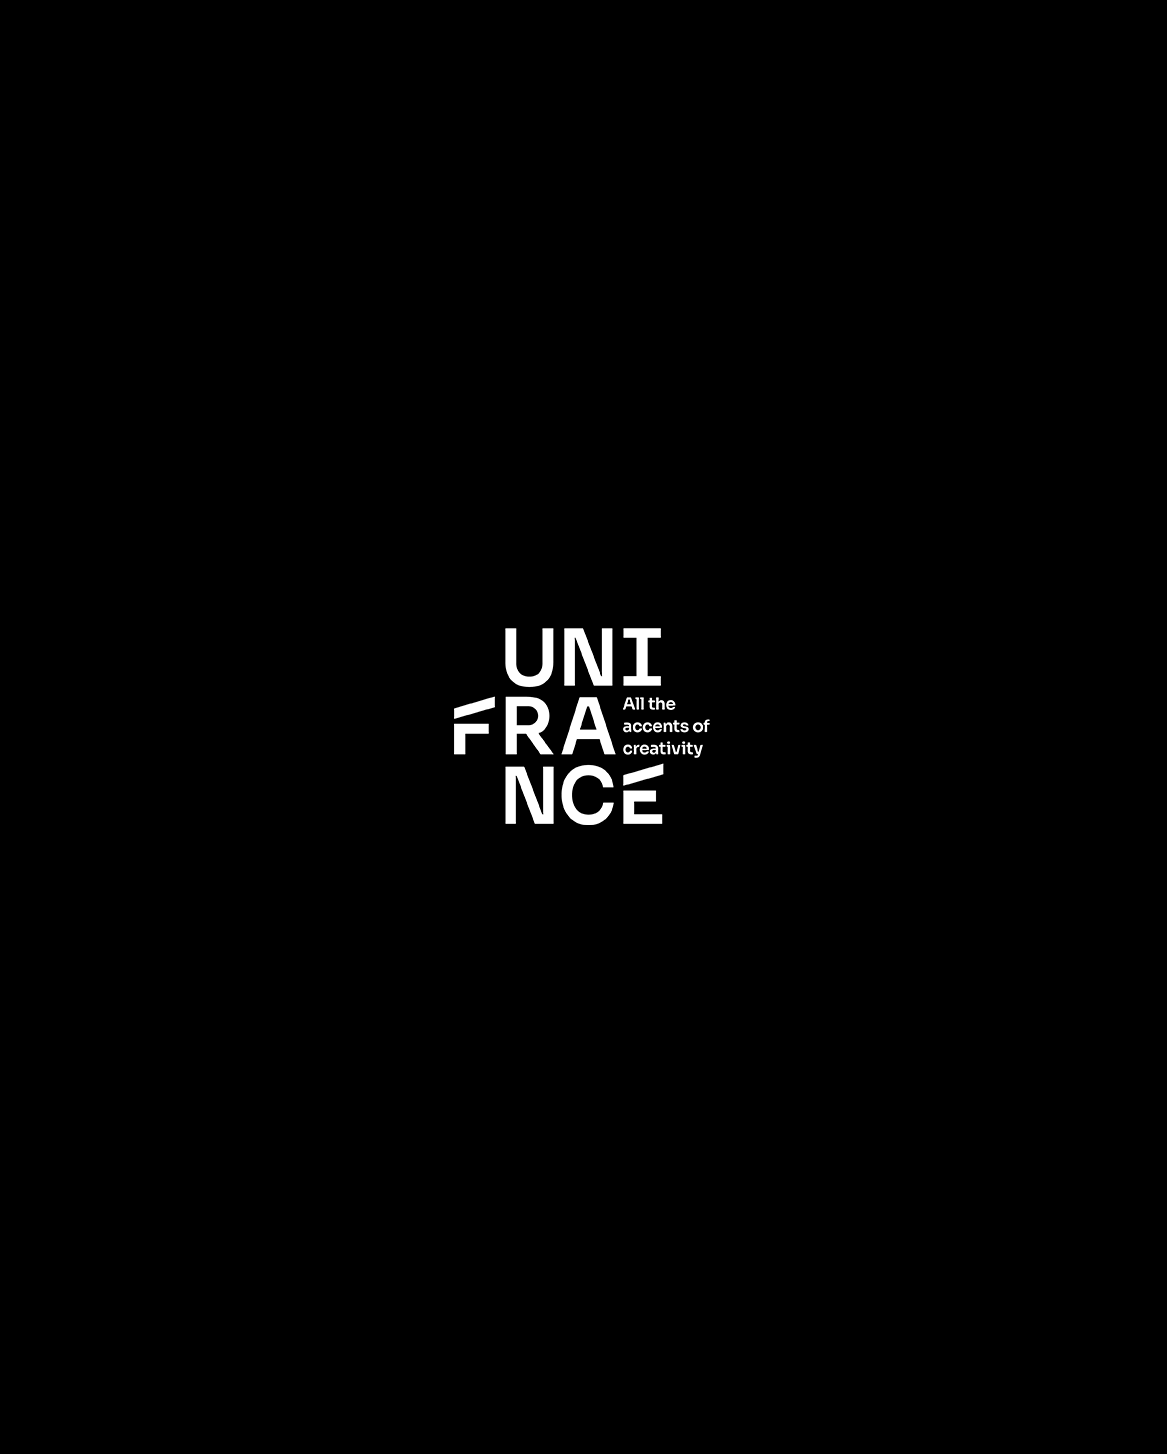 Premio Unifrance del cortometraje - 2018